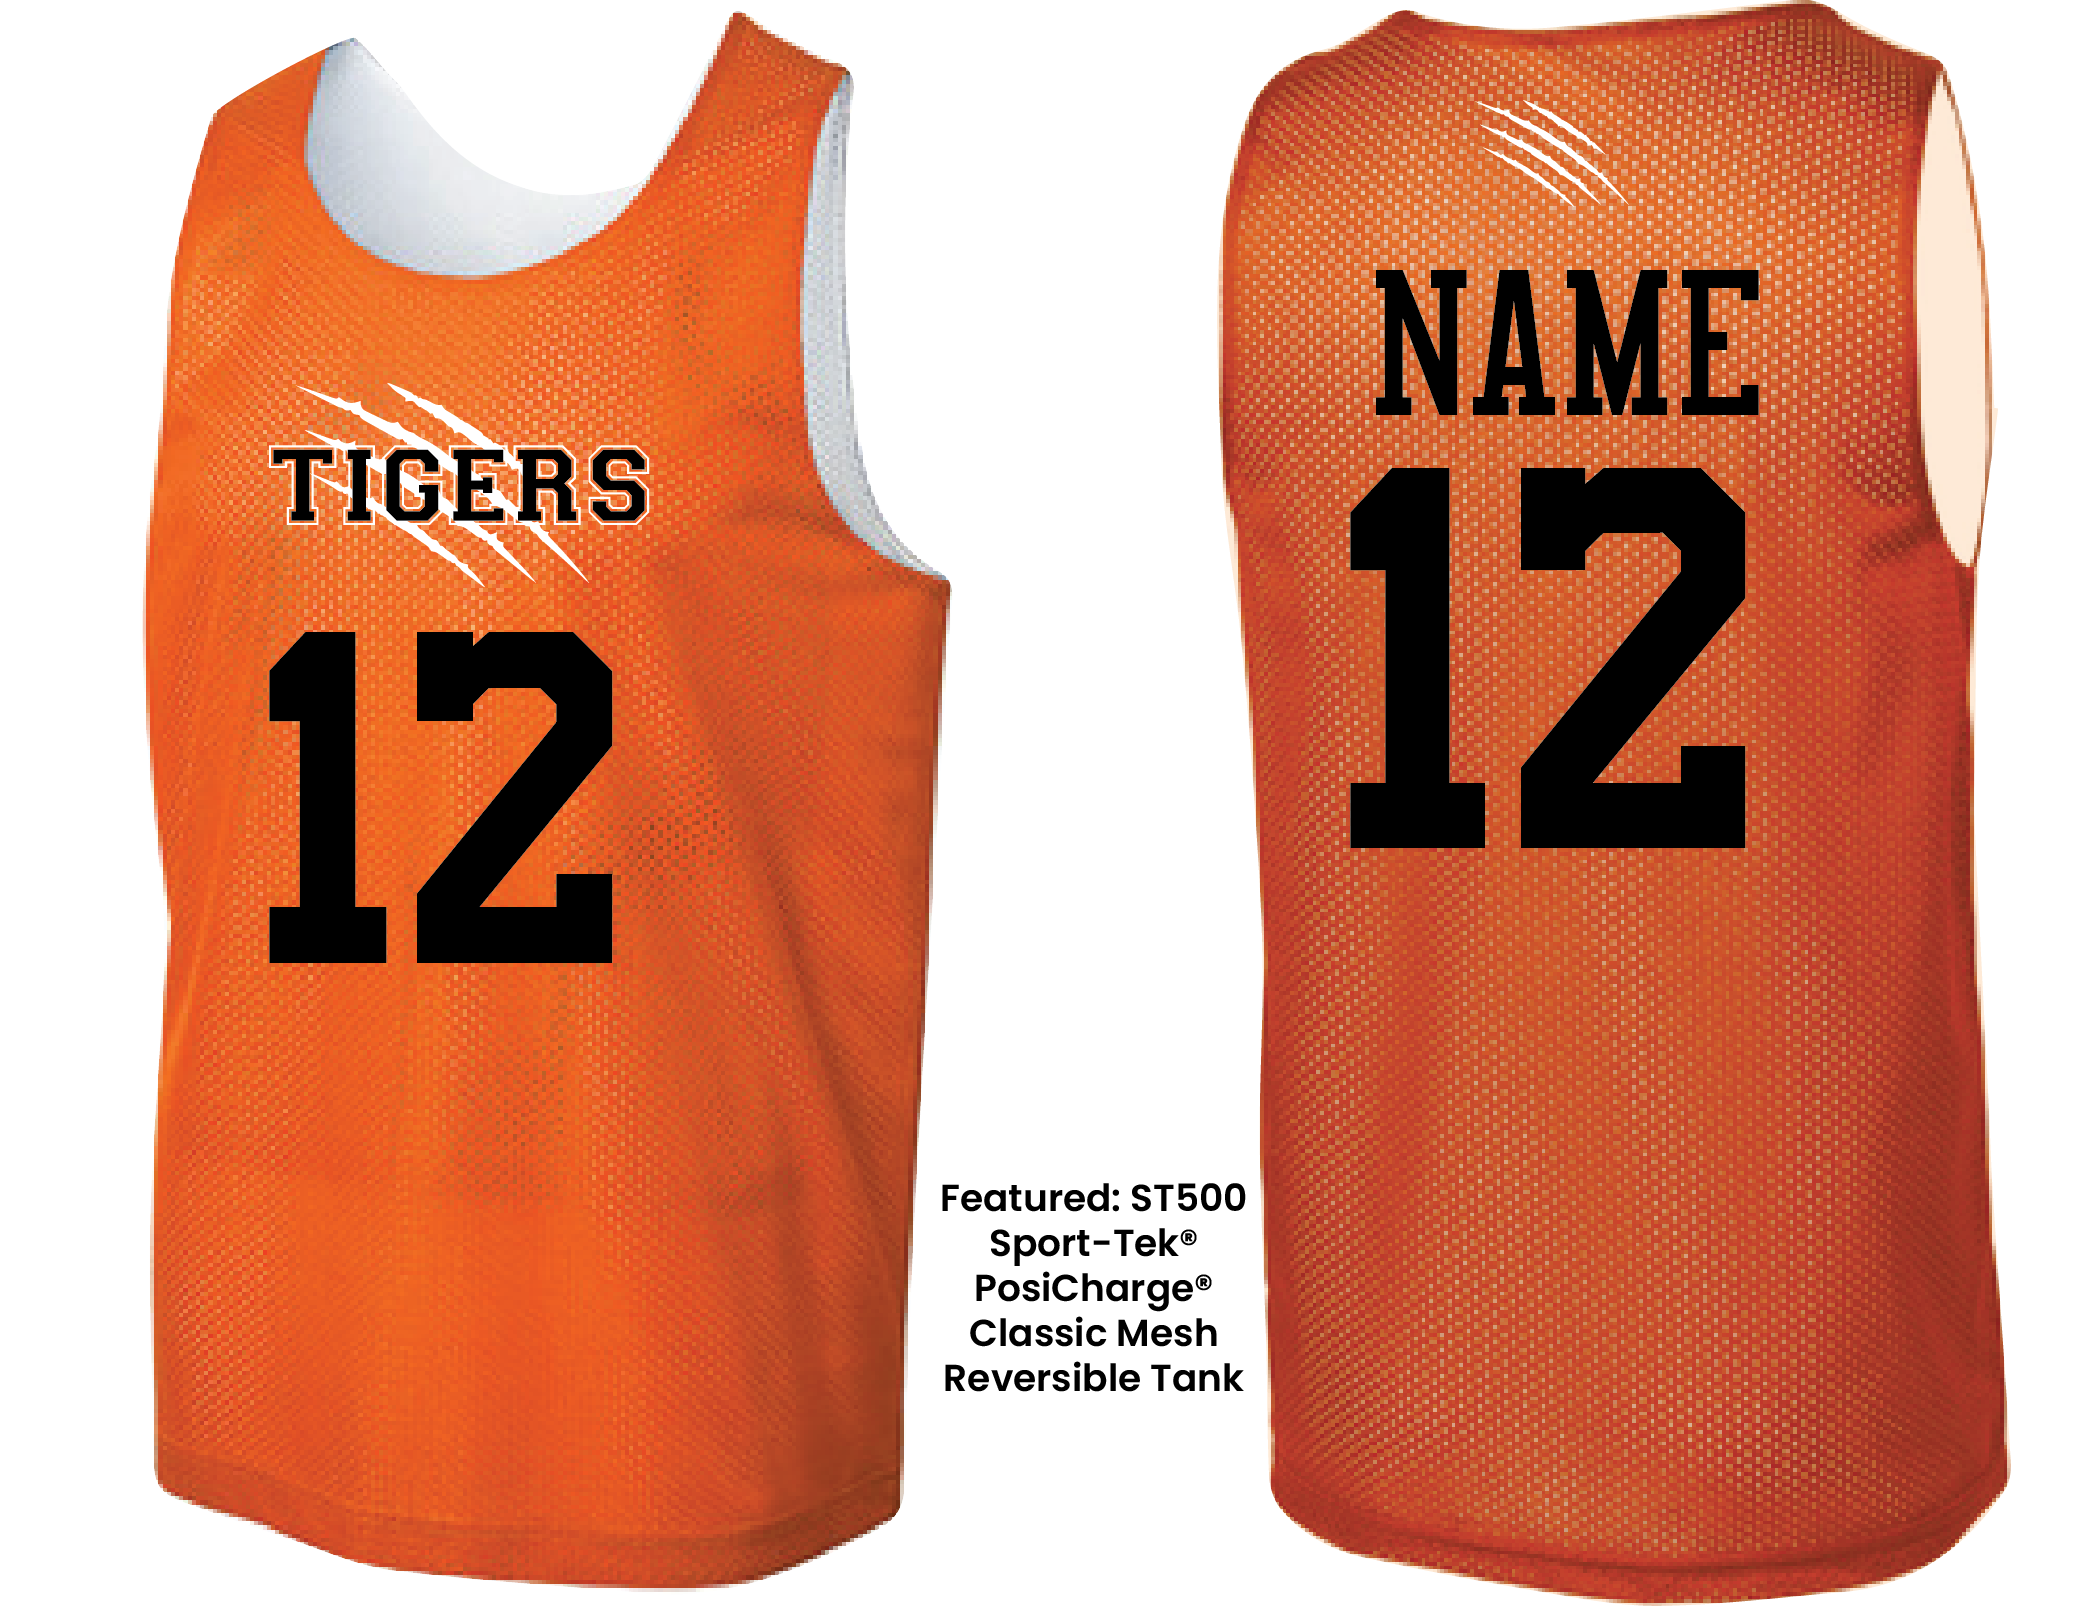 Branded has custom basketball jerseys